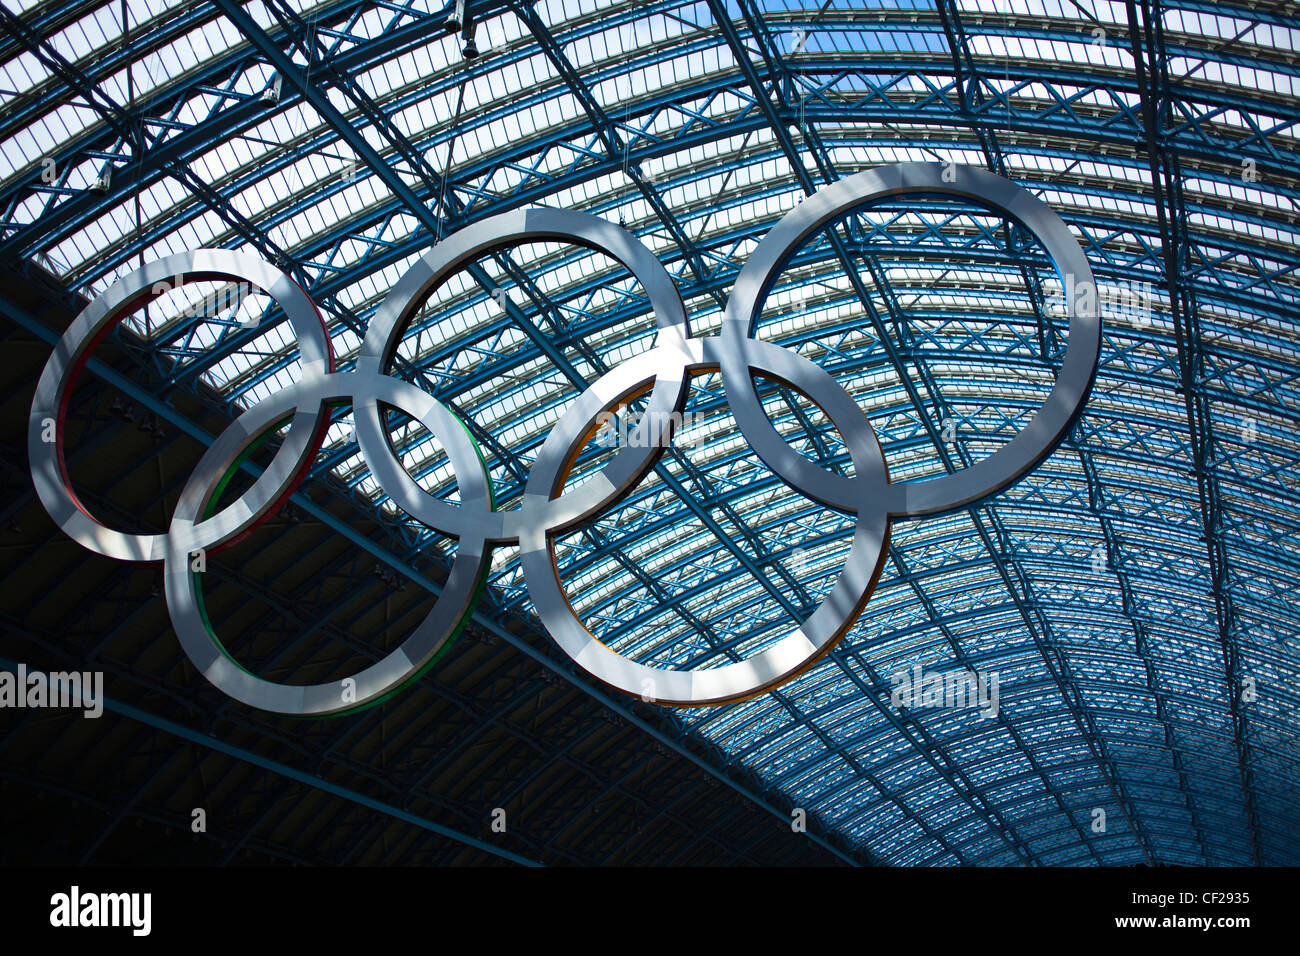 Un gigantesco juego de aros olímpicos suspendidas en la estación internacional de St Pancras para dar la bienvenida a los visitantes a Londres, ciudad anfitriona de los 2012 Foto de stock